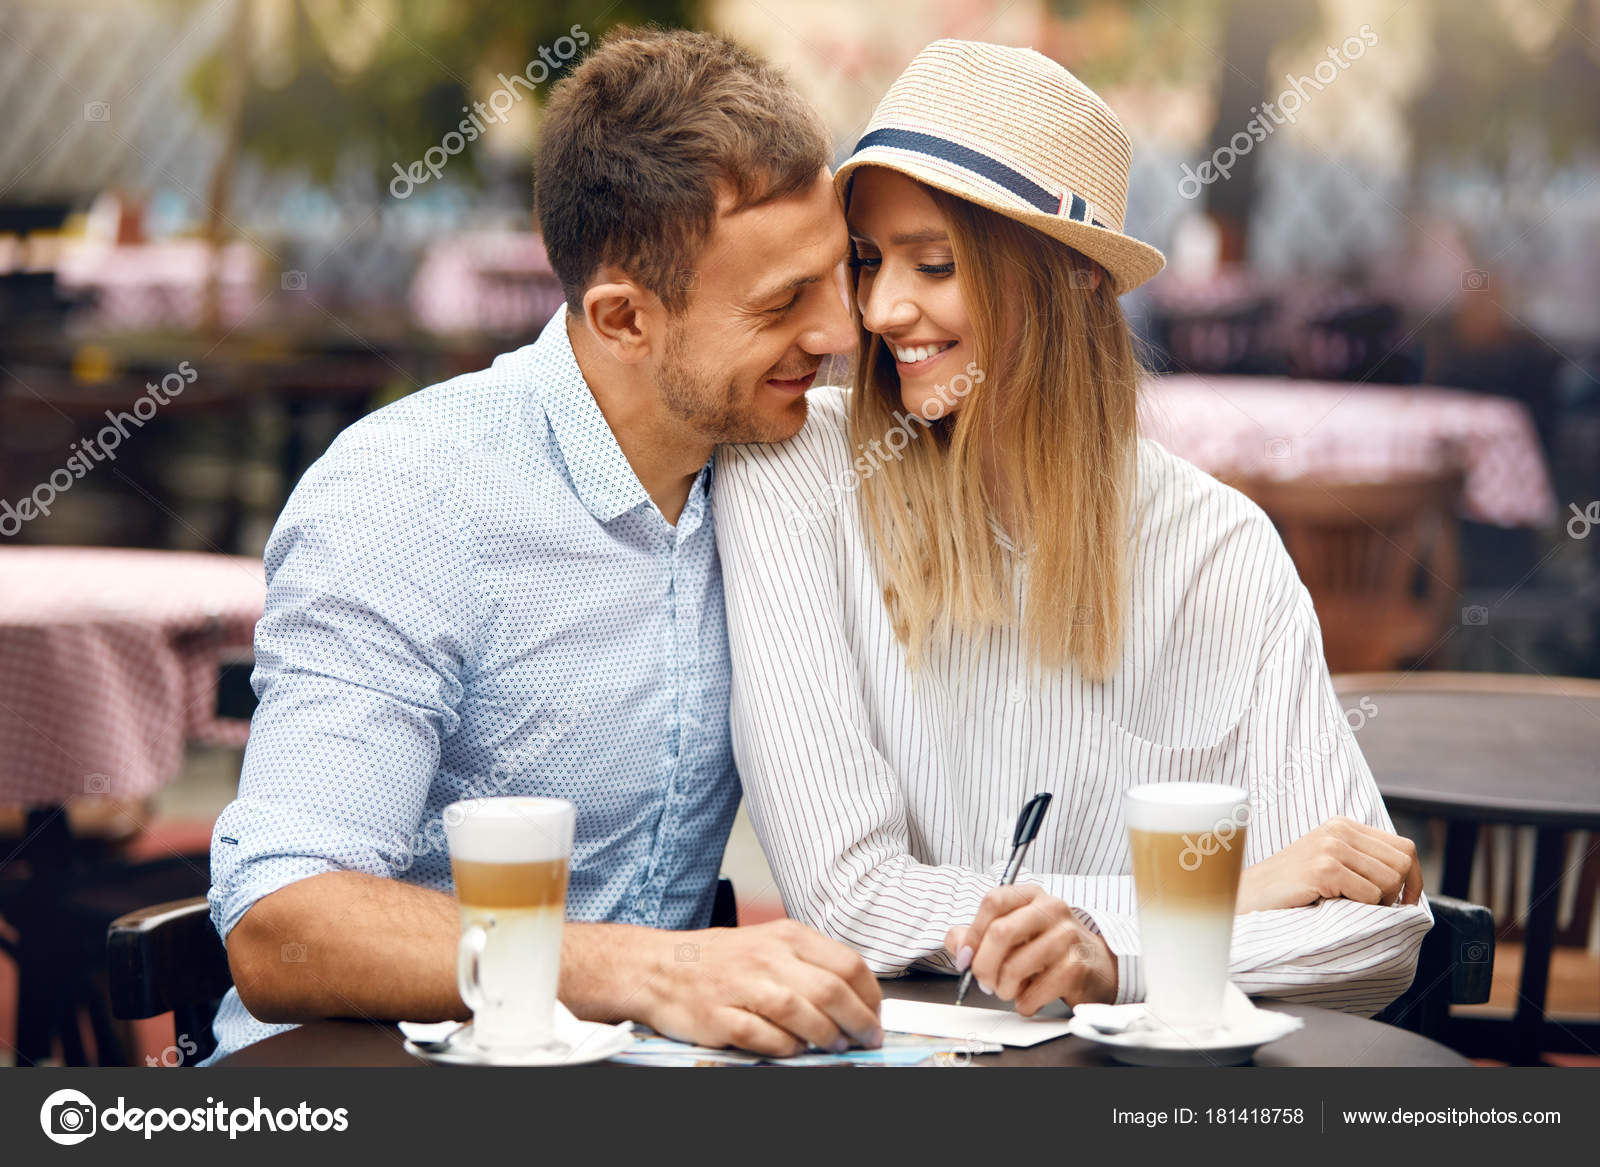 Reisen dating Café ålders intervall för online dating